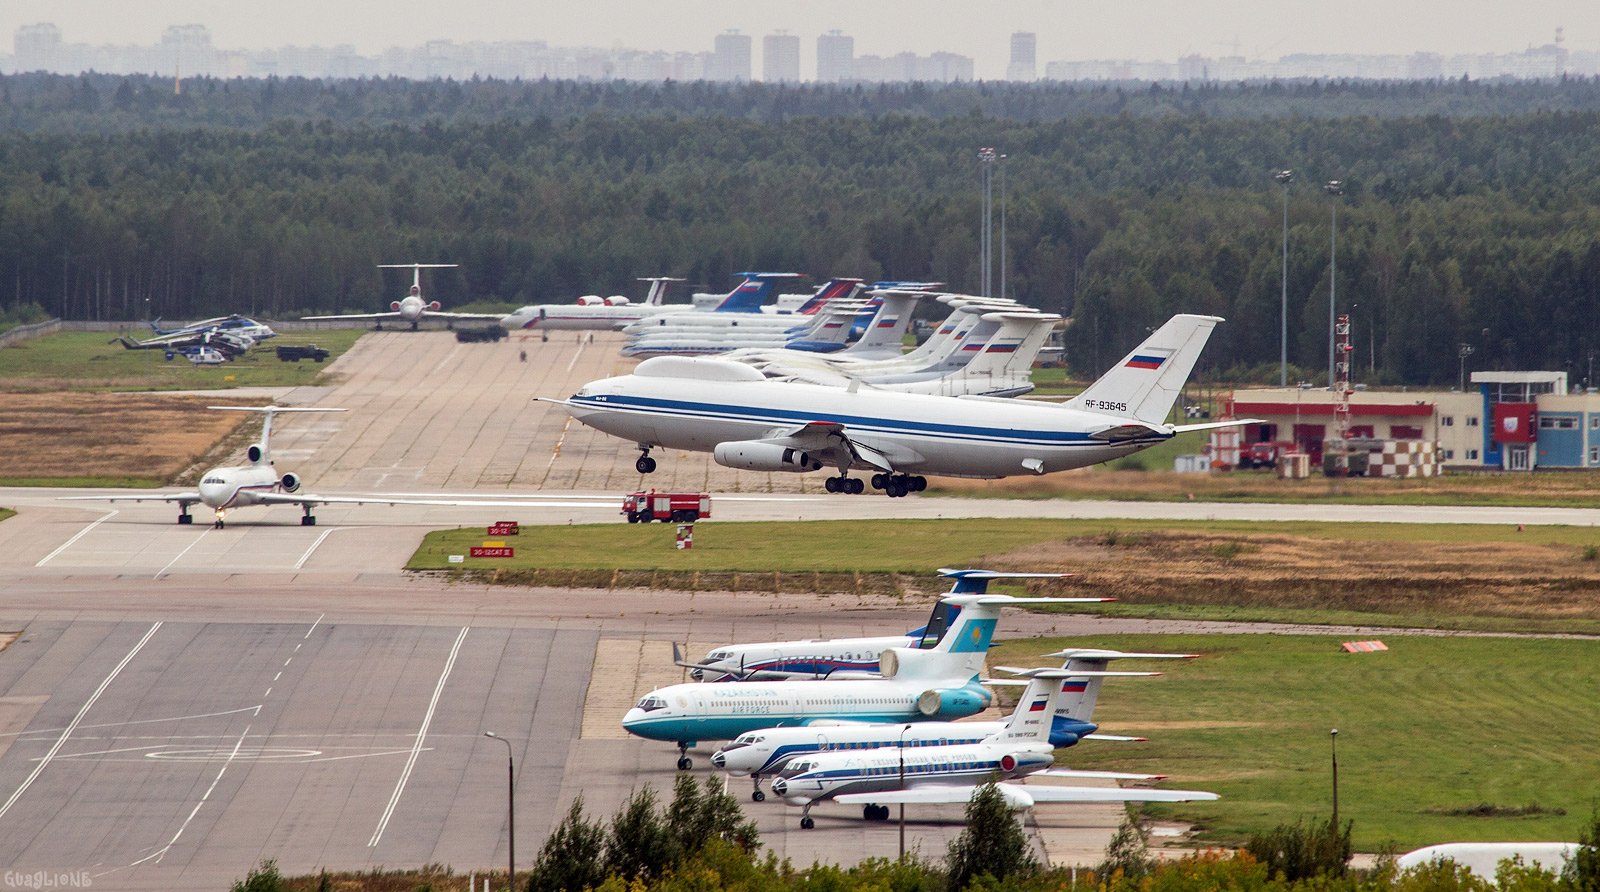 чкаловский аэродром в москве